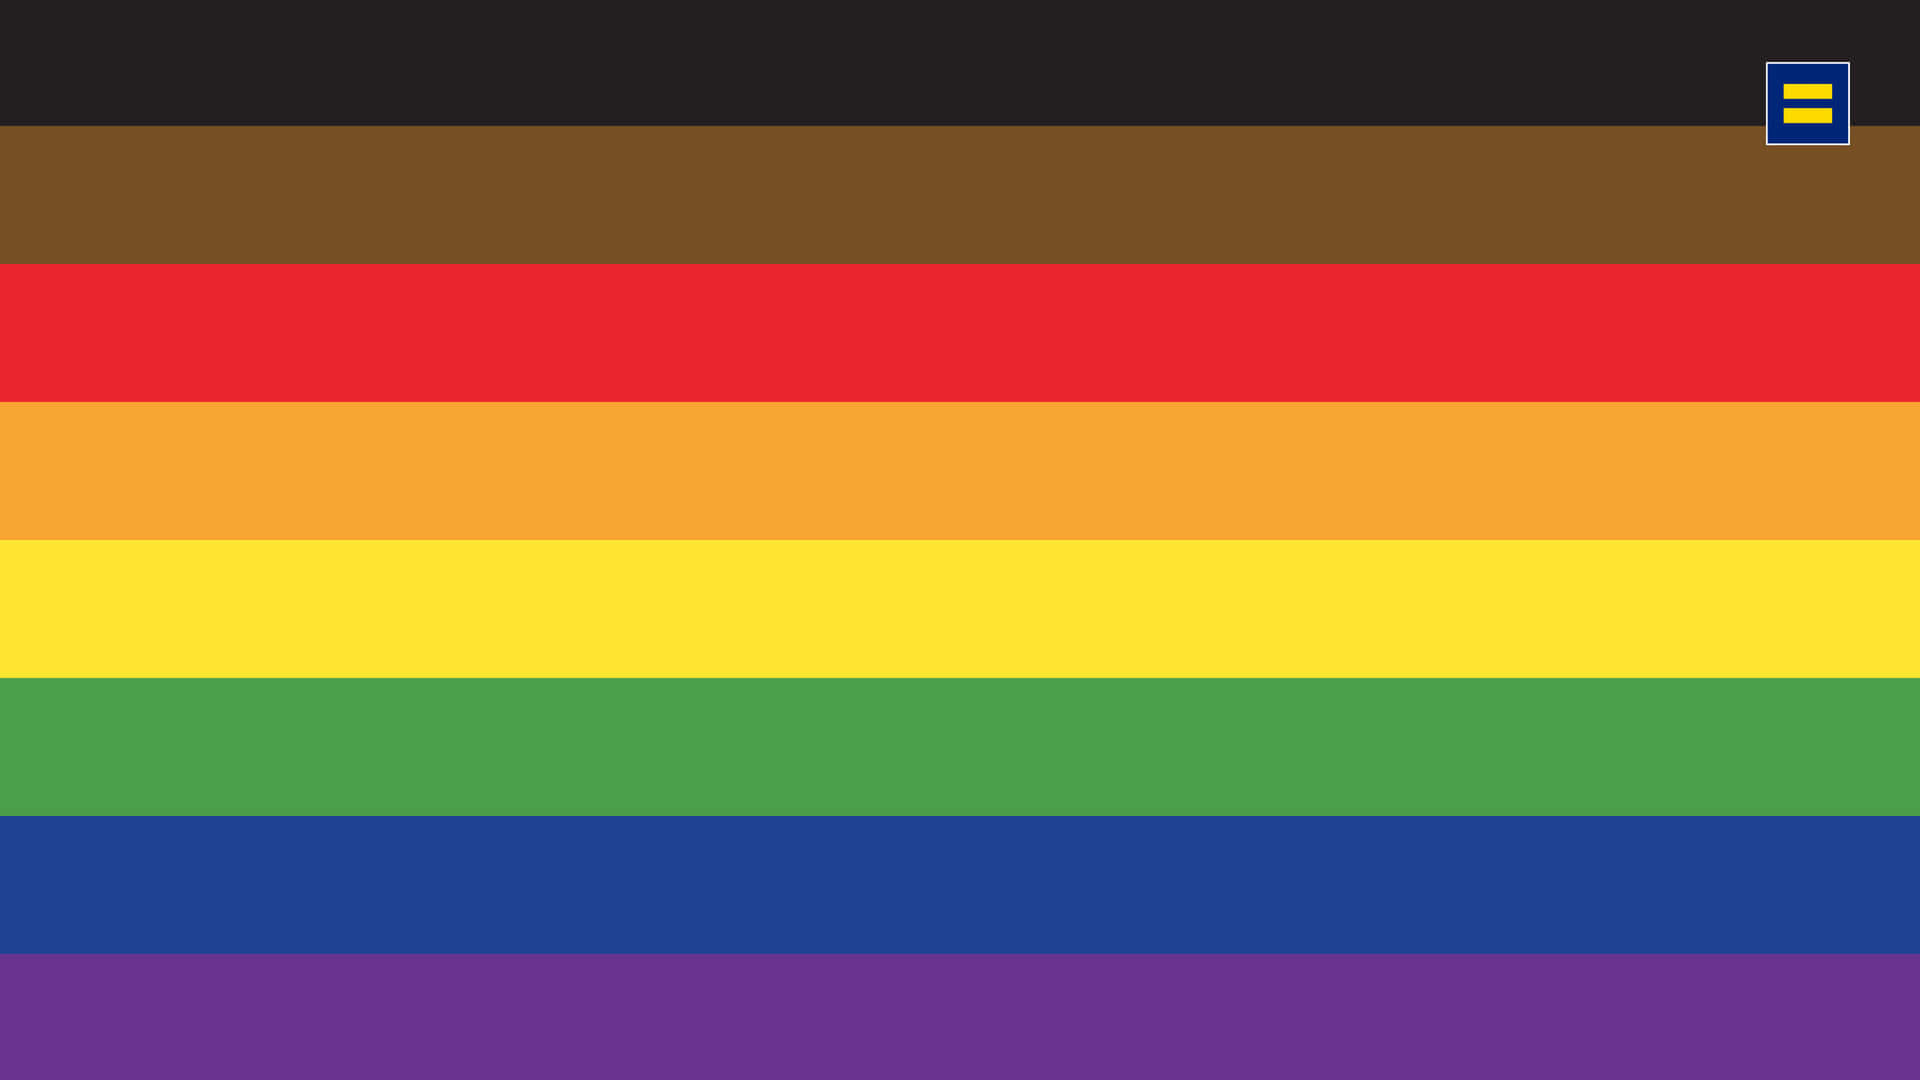 Zeigensie Das Ganze Jahr Über Stolz Ihre Liebe Mit Dieser Wunderschönen, Farbenfrohen Pride-flagge!